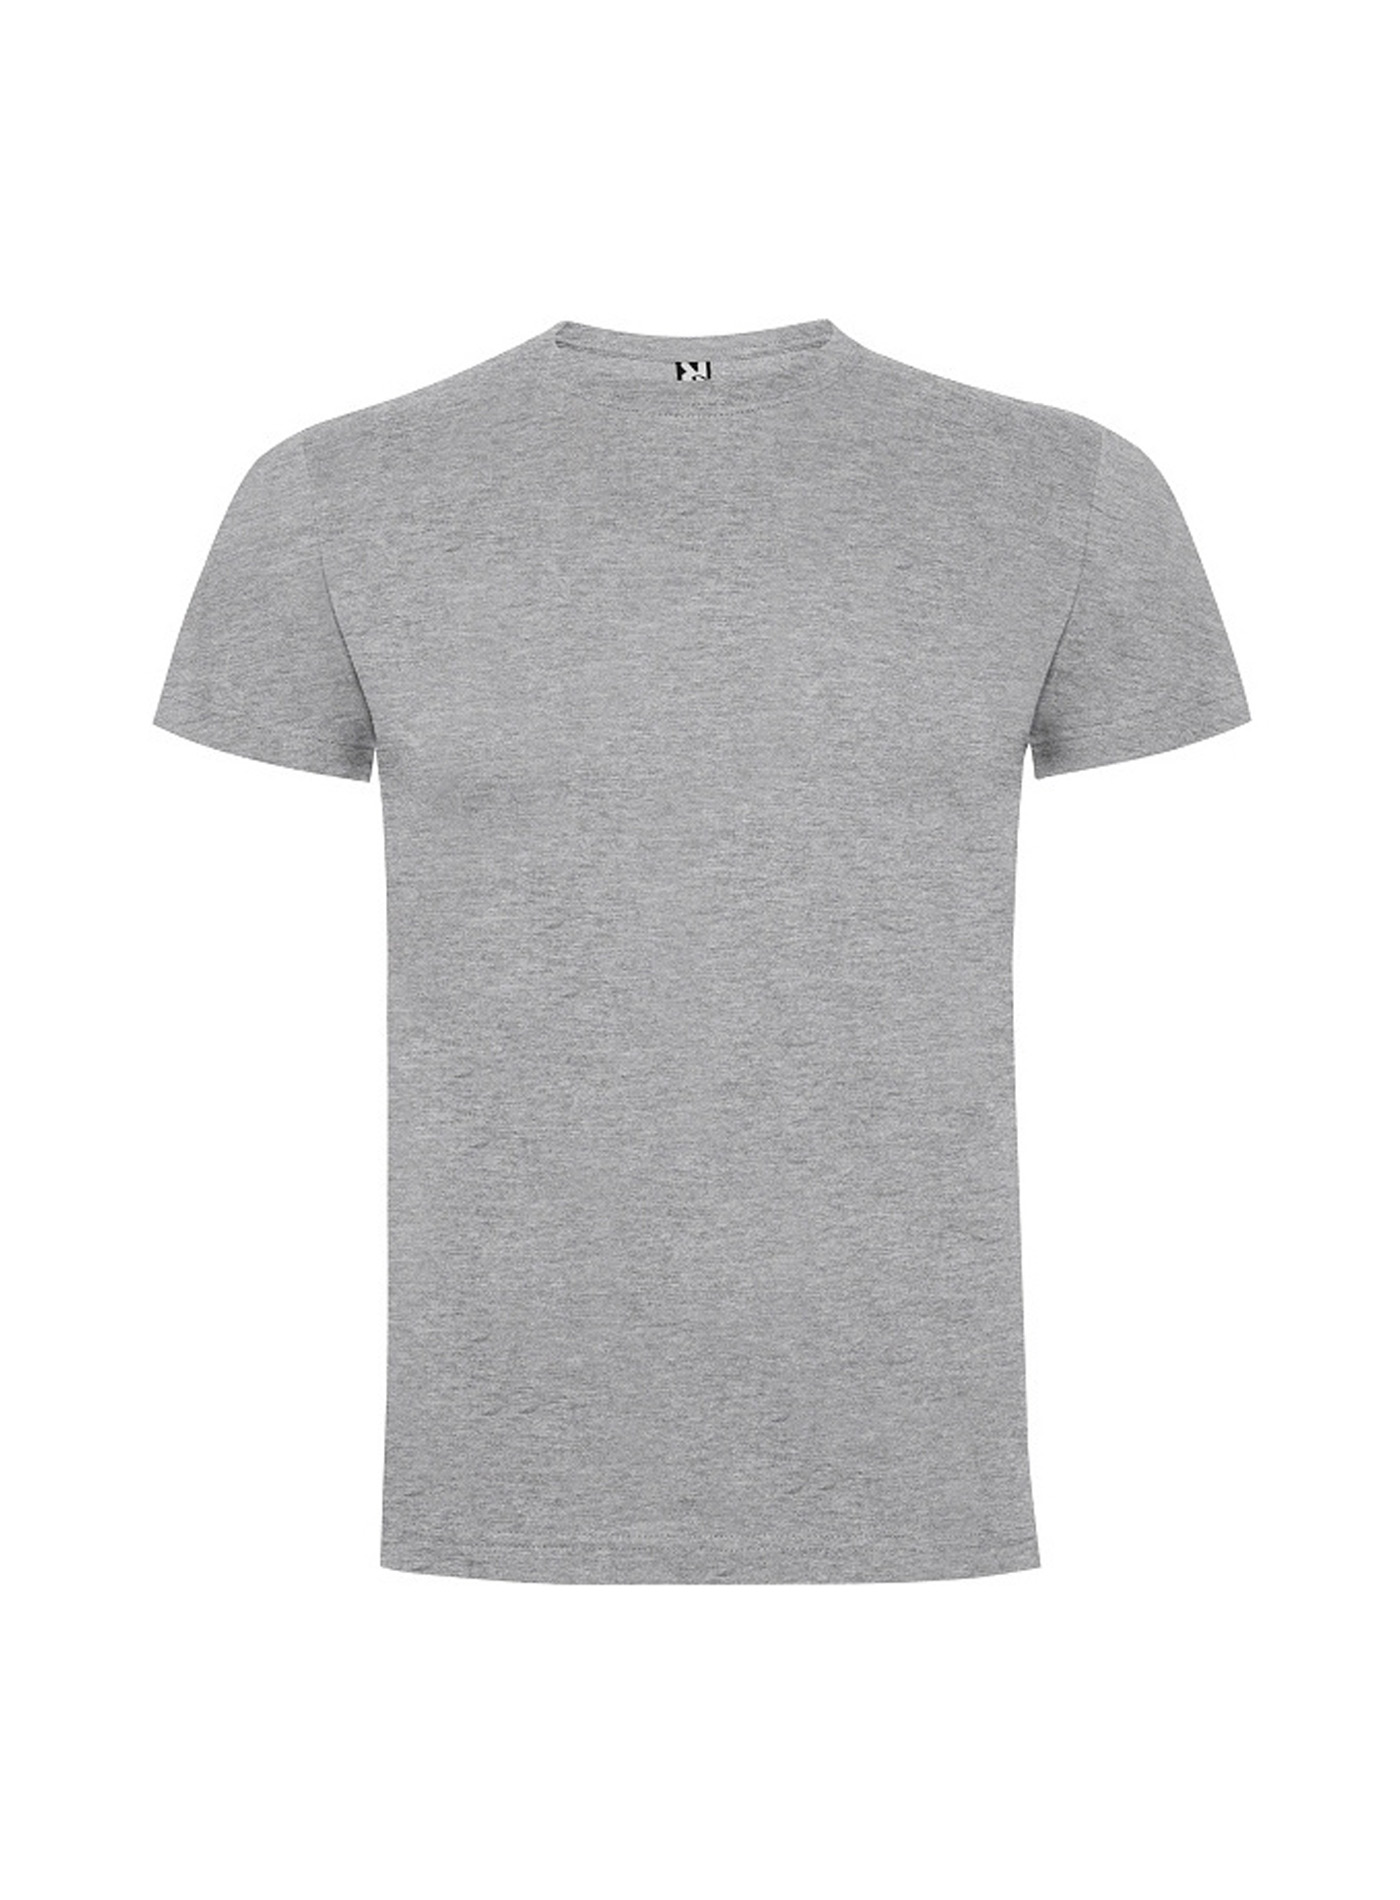 Dětské tričko Roly Dogo premium - Světle šedý melír 7-8